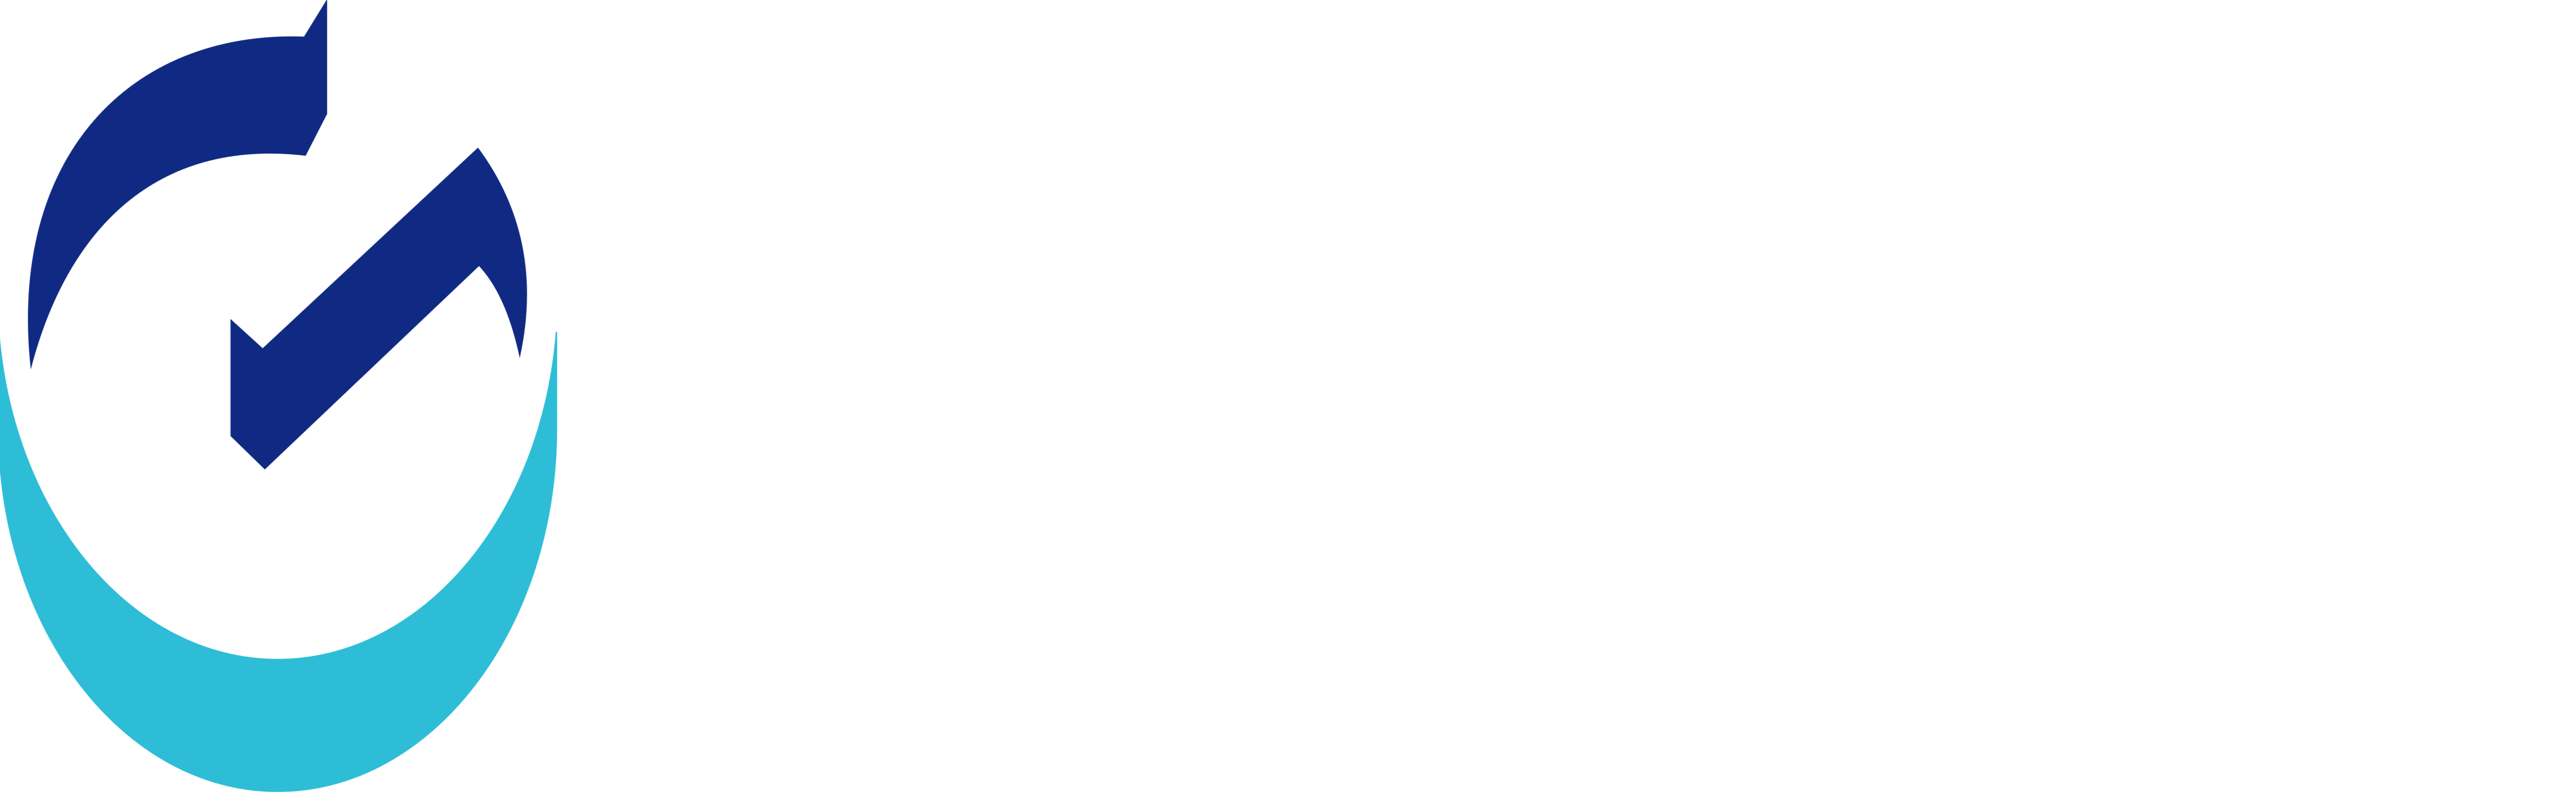 Gravity Co Ltd logo